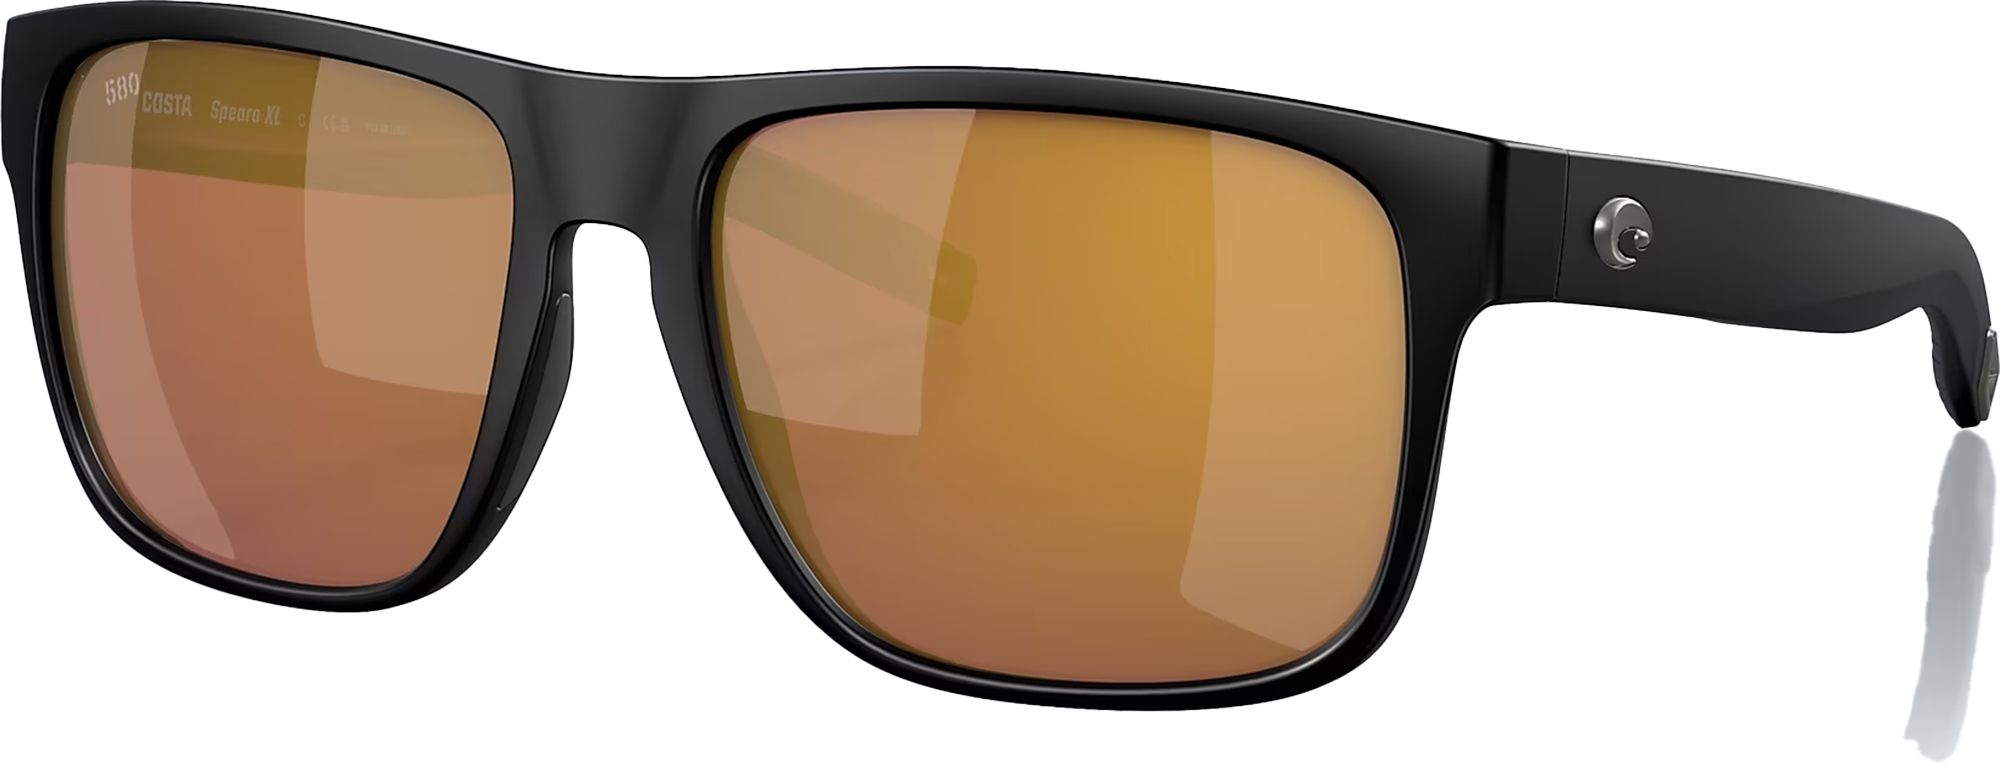 Photos - Sunglasses Costa Del Mar Spearo XL 580G Polarized , Men's, Matte Black/Gold 